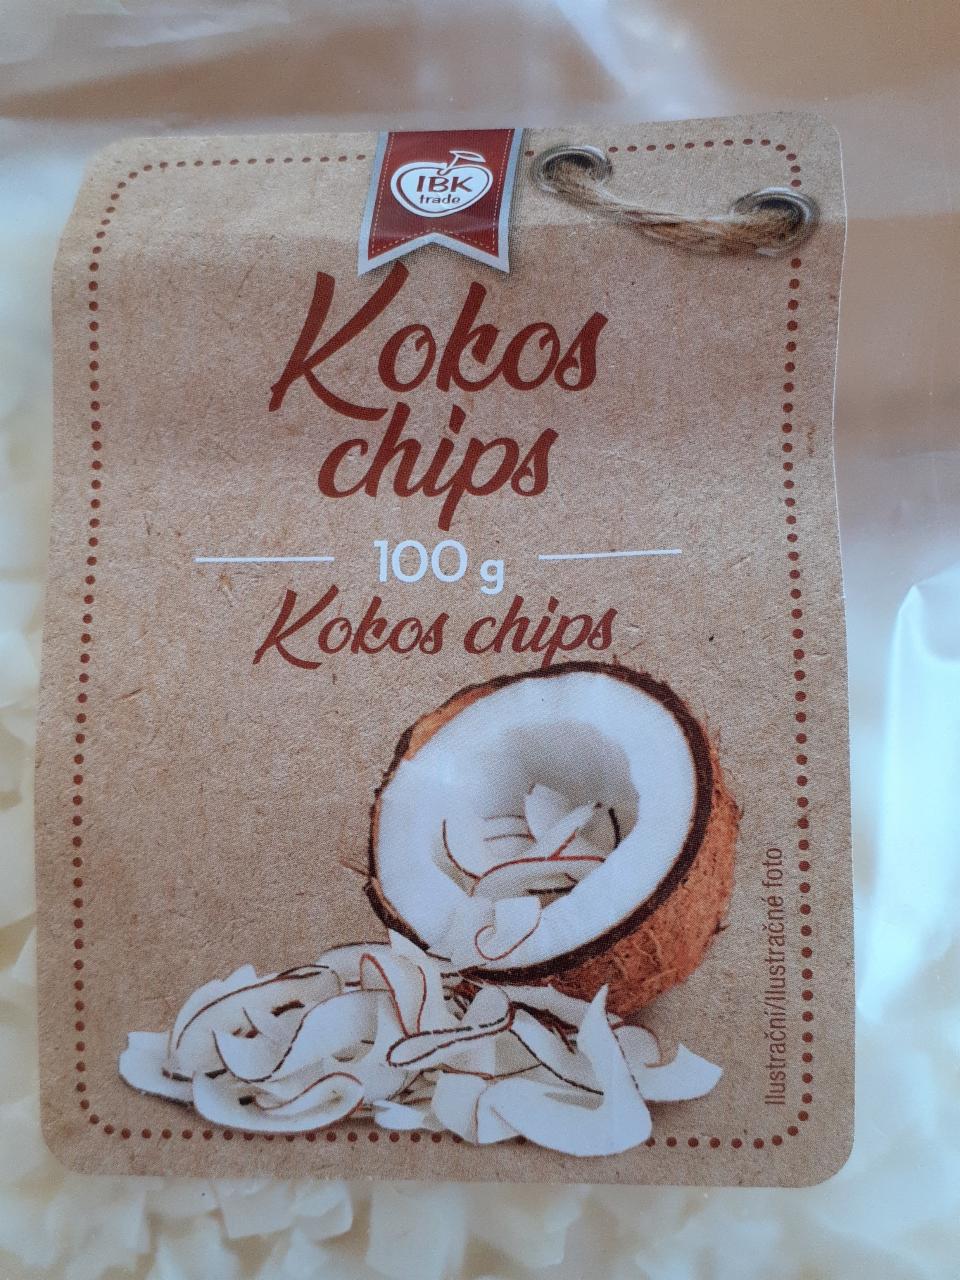 Fotografie - Kokos chips IBK trade